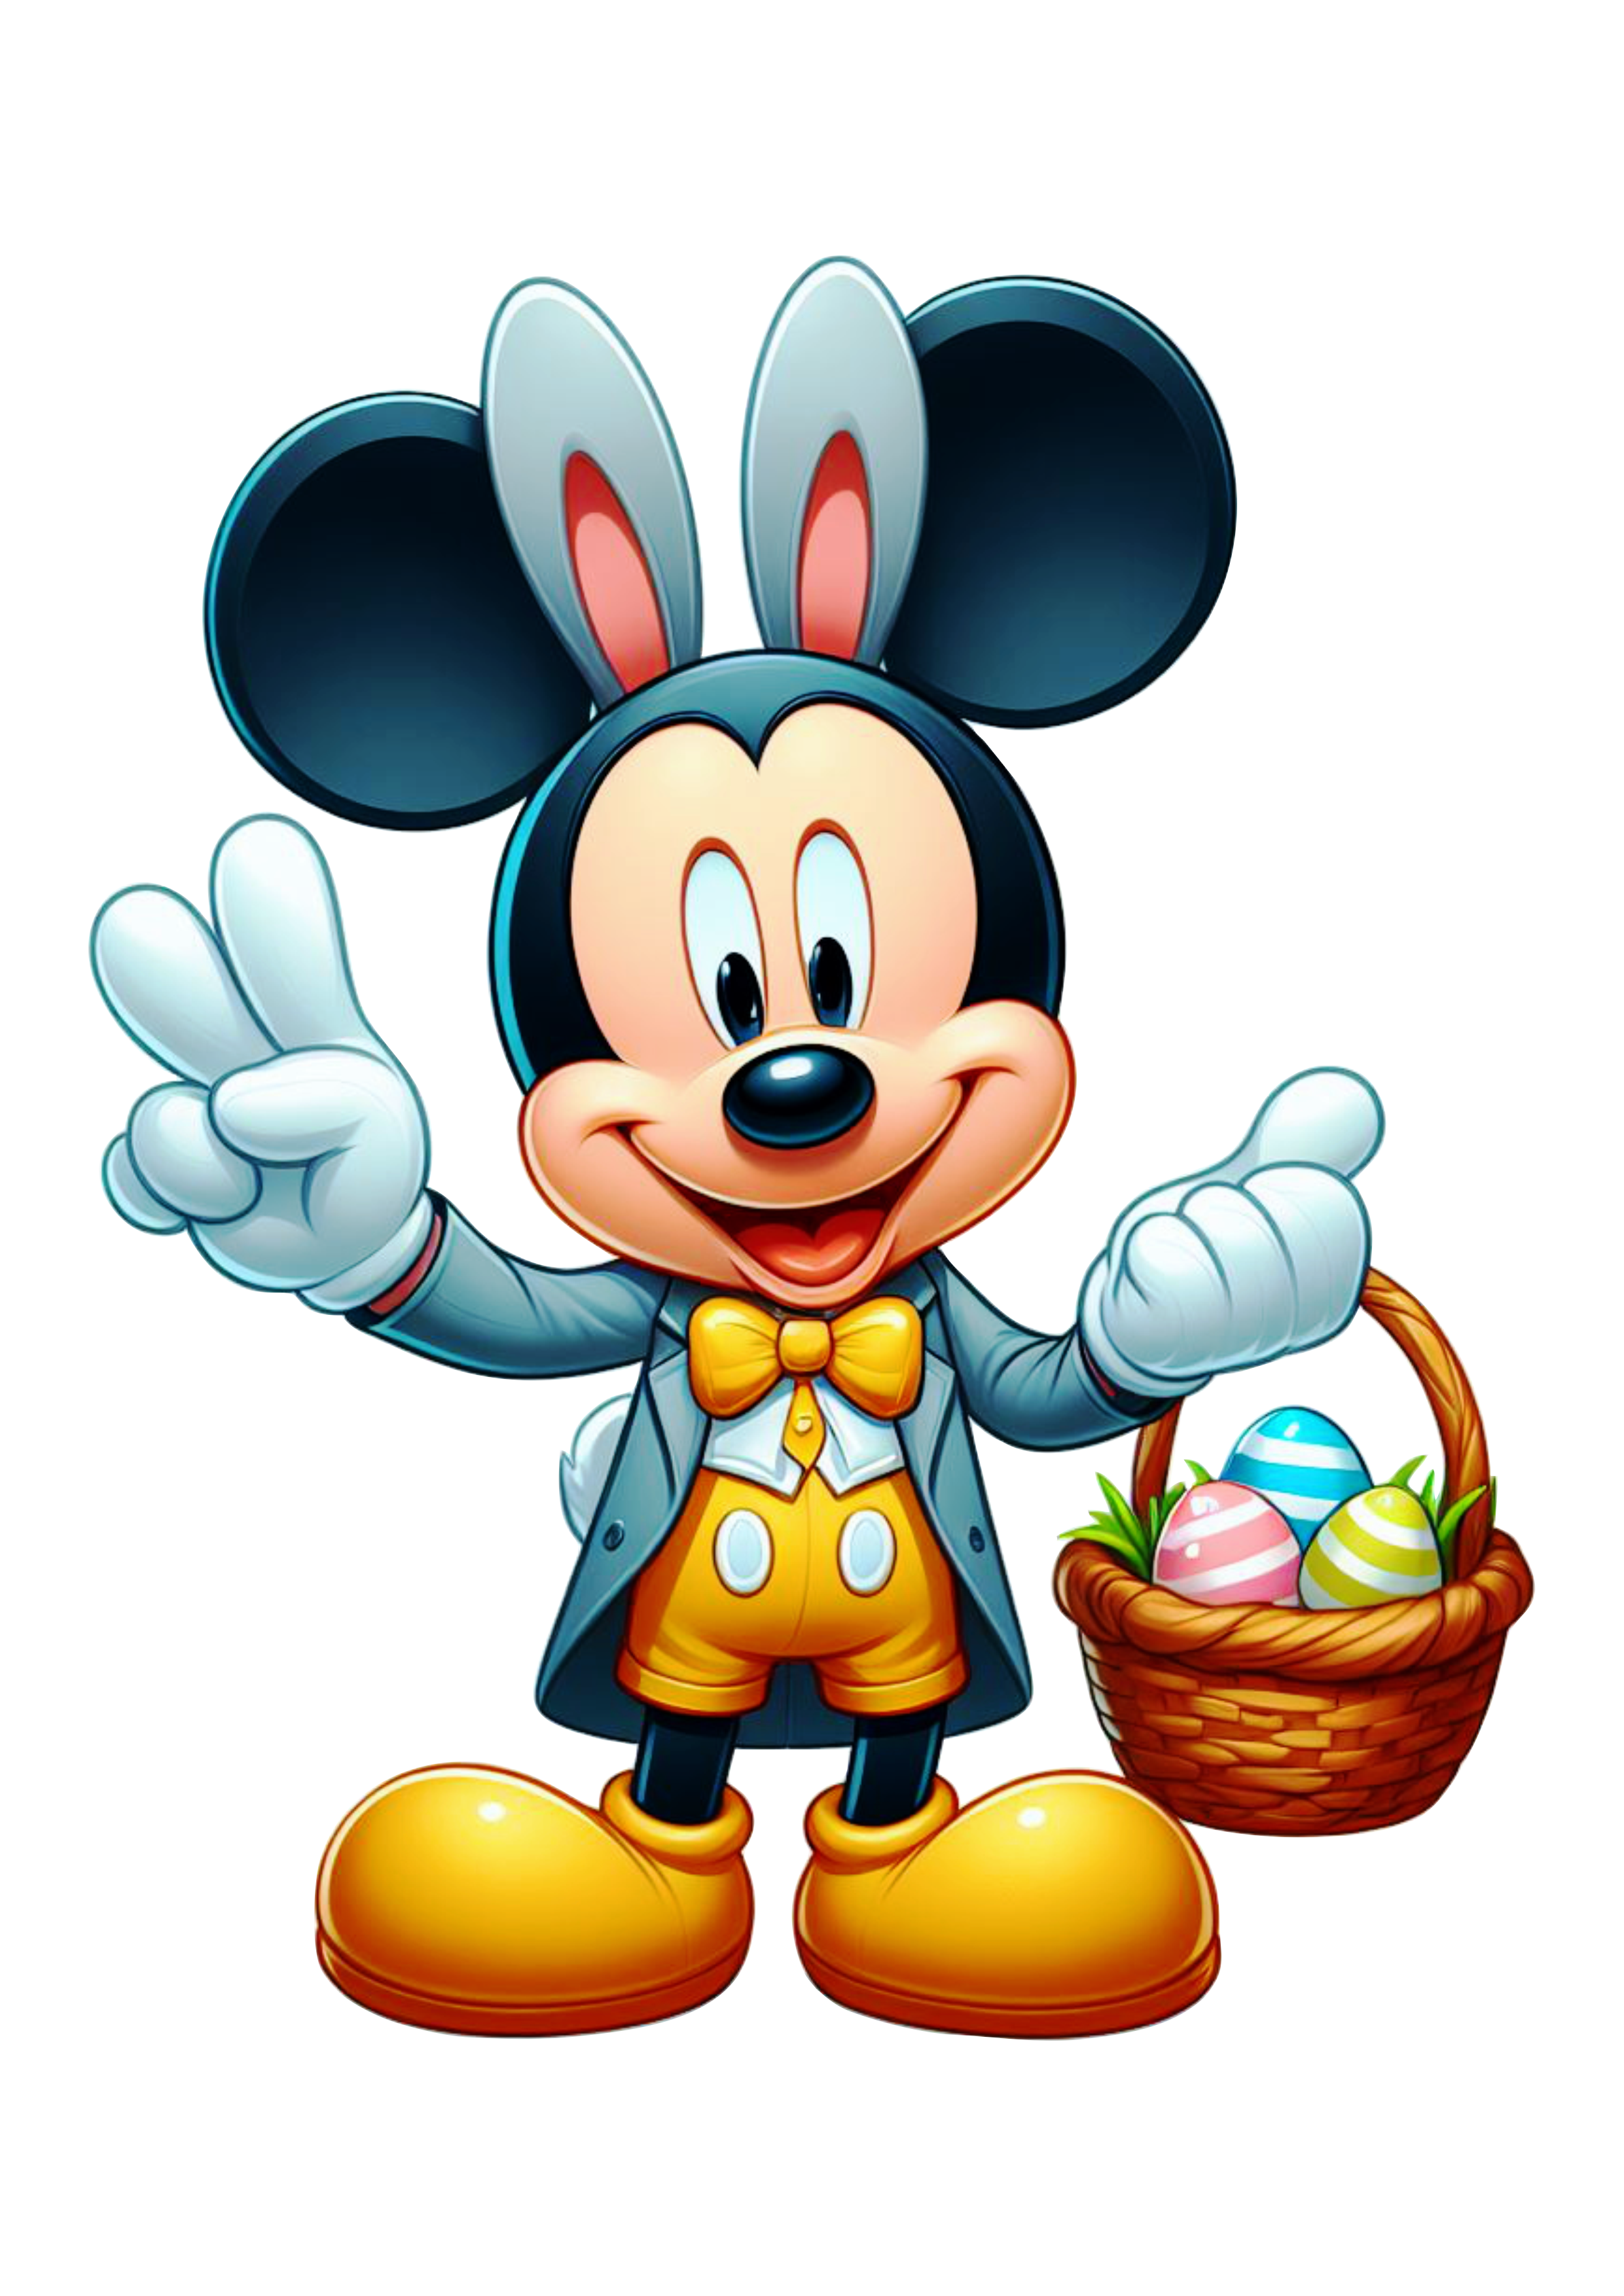 Imagens de páscoa decoração Mickey Mouse com orelhas de coelhinho desenho infantil clipart png vetor Disney ilustração grátis